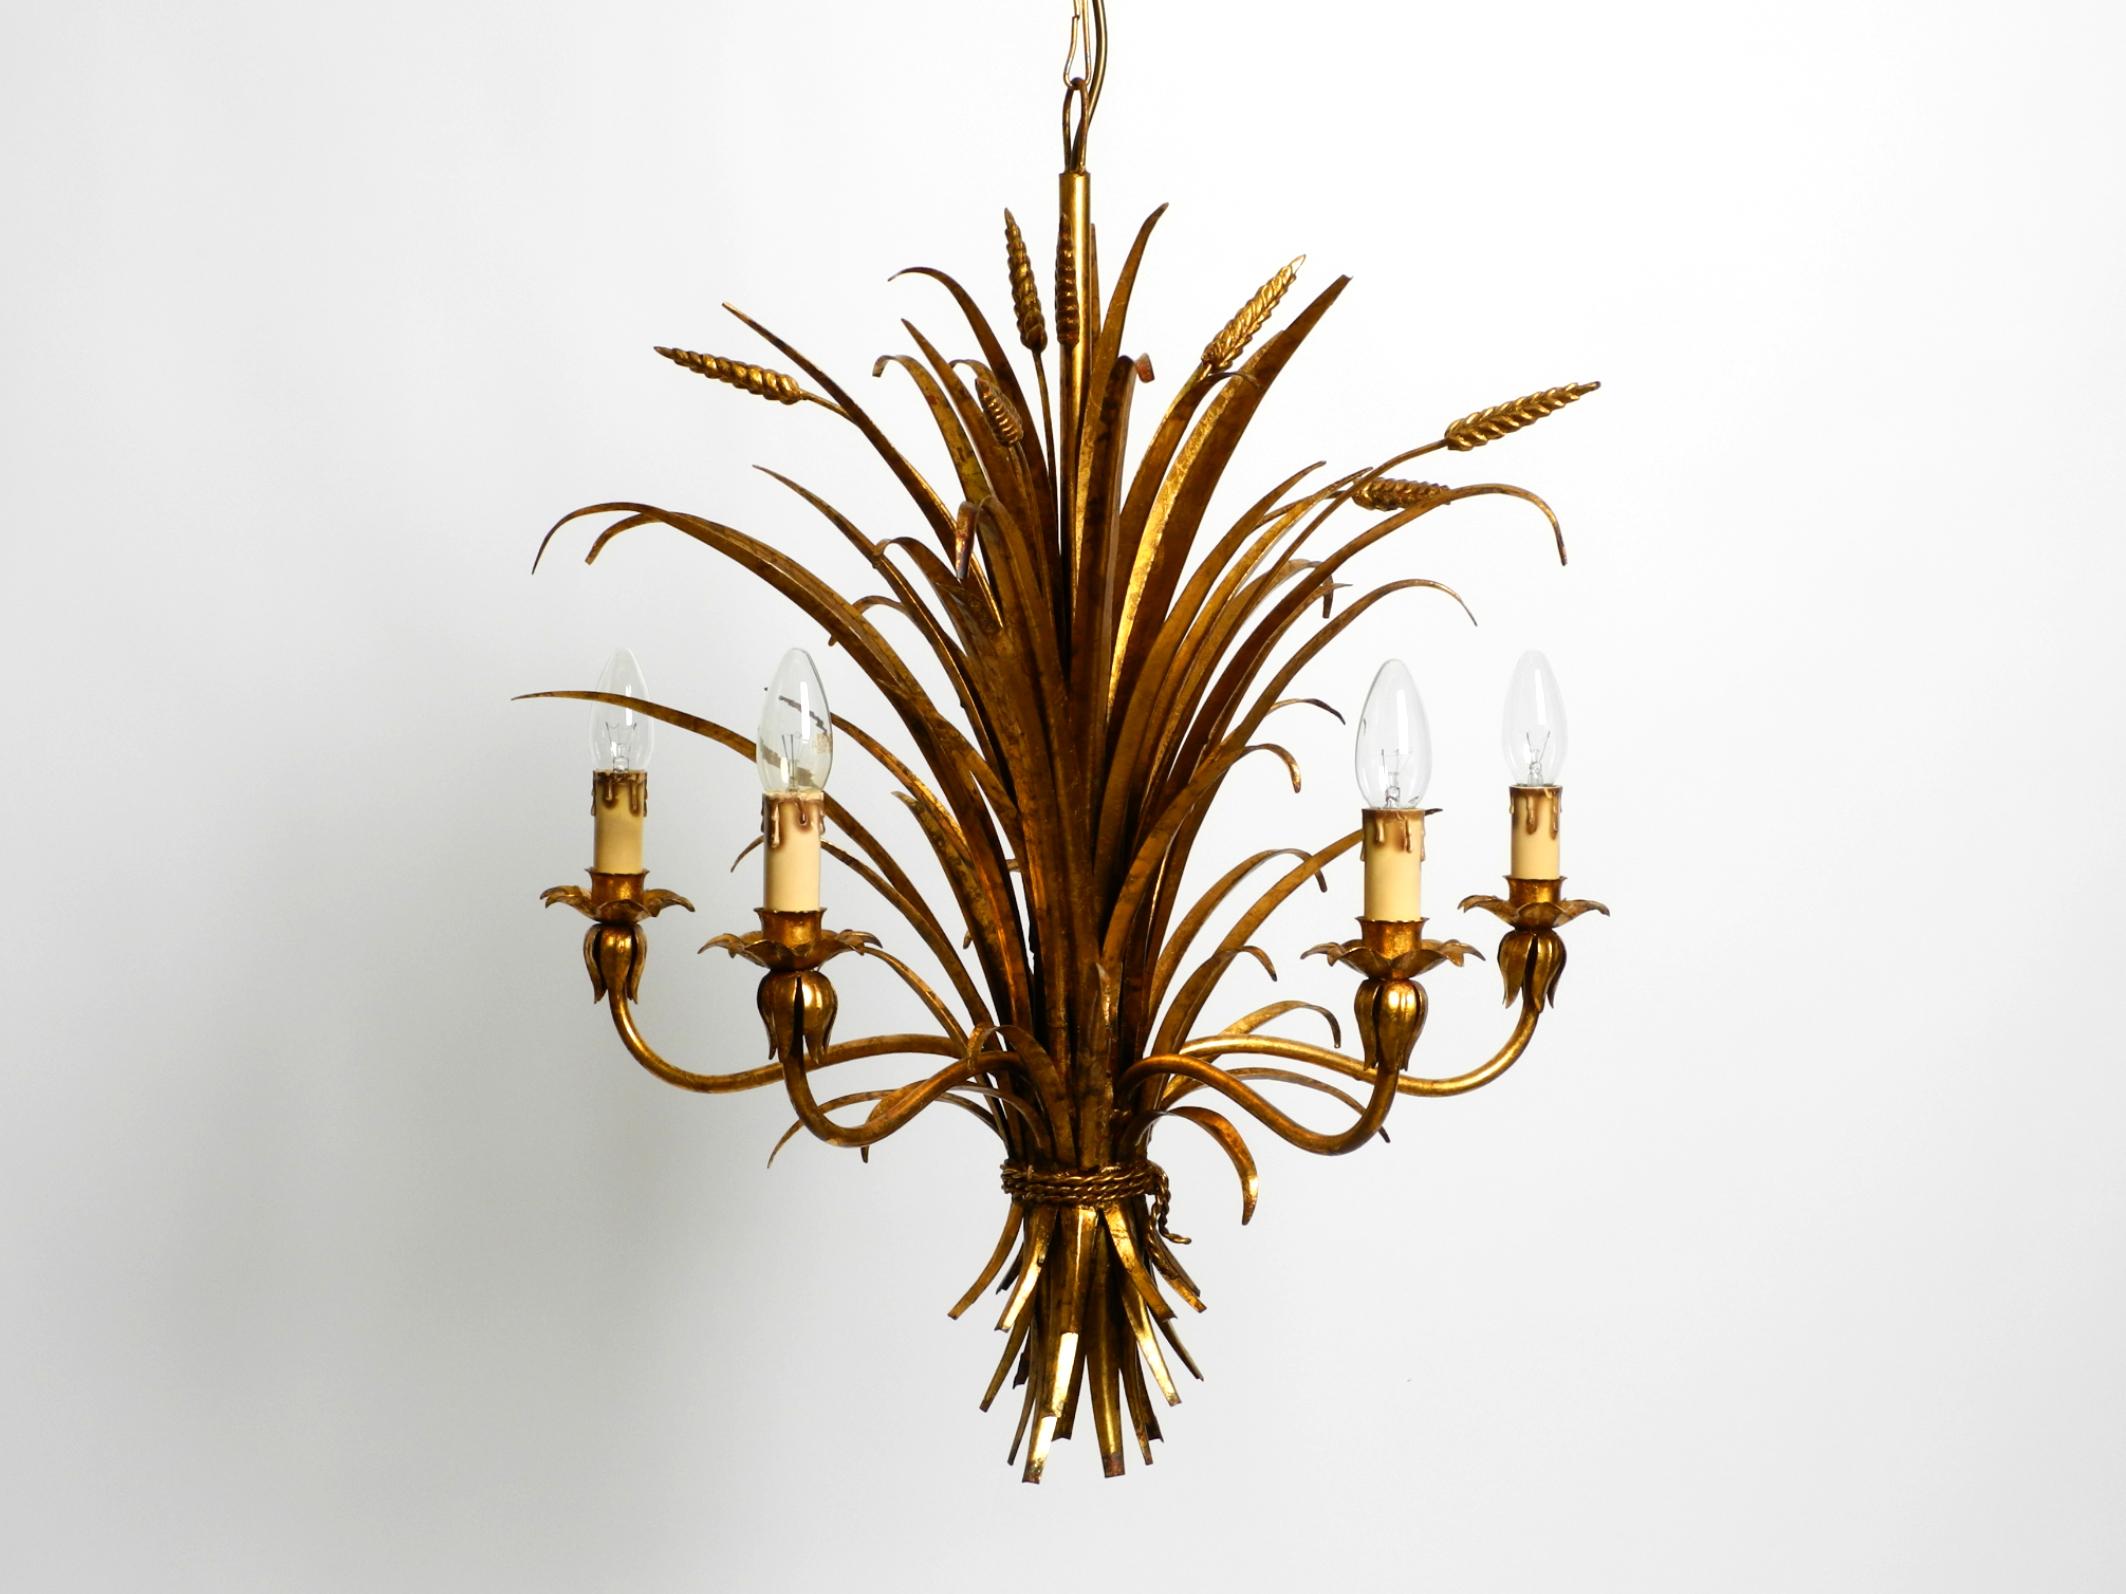 Magnifique lustre en métal doré à 5 bras de Hans Kögl, datant des années 1970.
Hans Kögl était un célèbre designer de luminaires et de tables. Il a travaillé avec des formes naturelles telles que des feuilles de palmier et d'autres formes végétales.